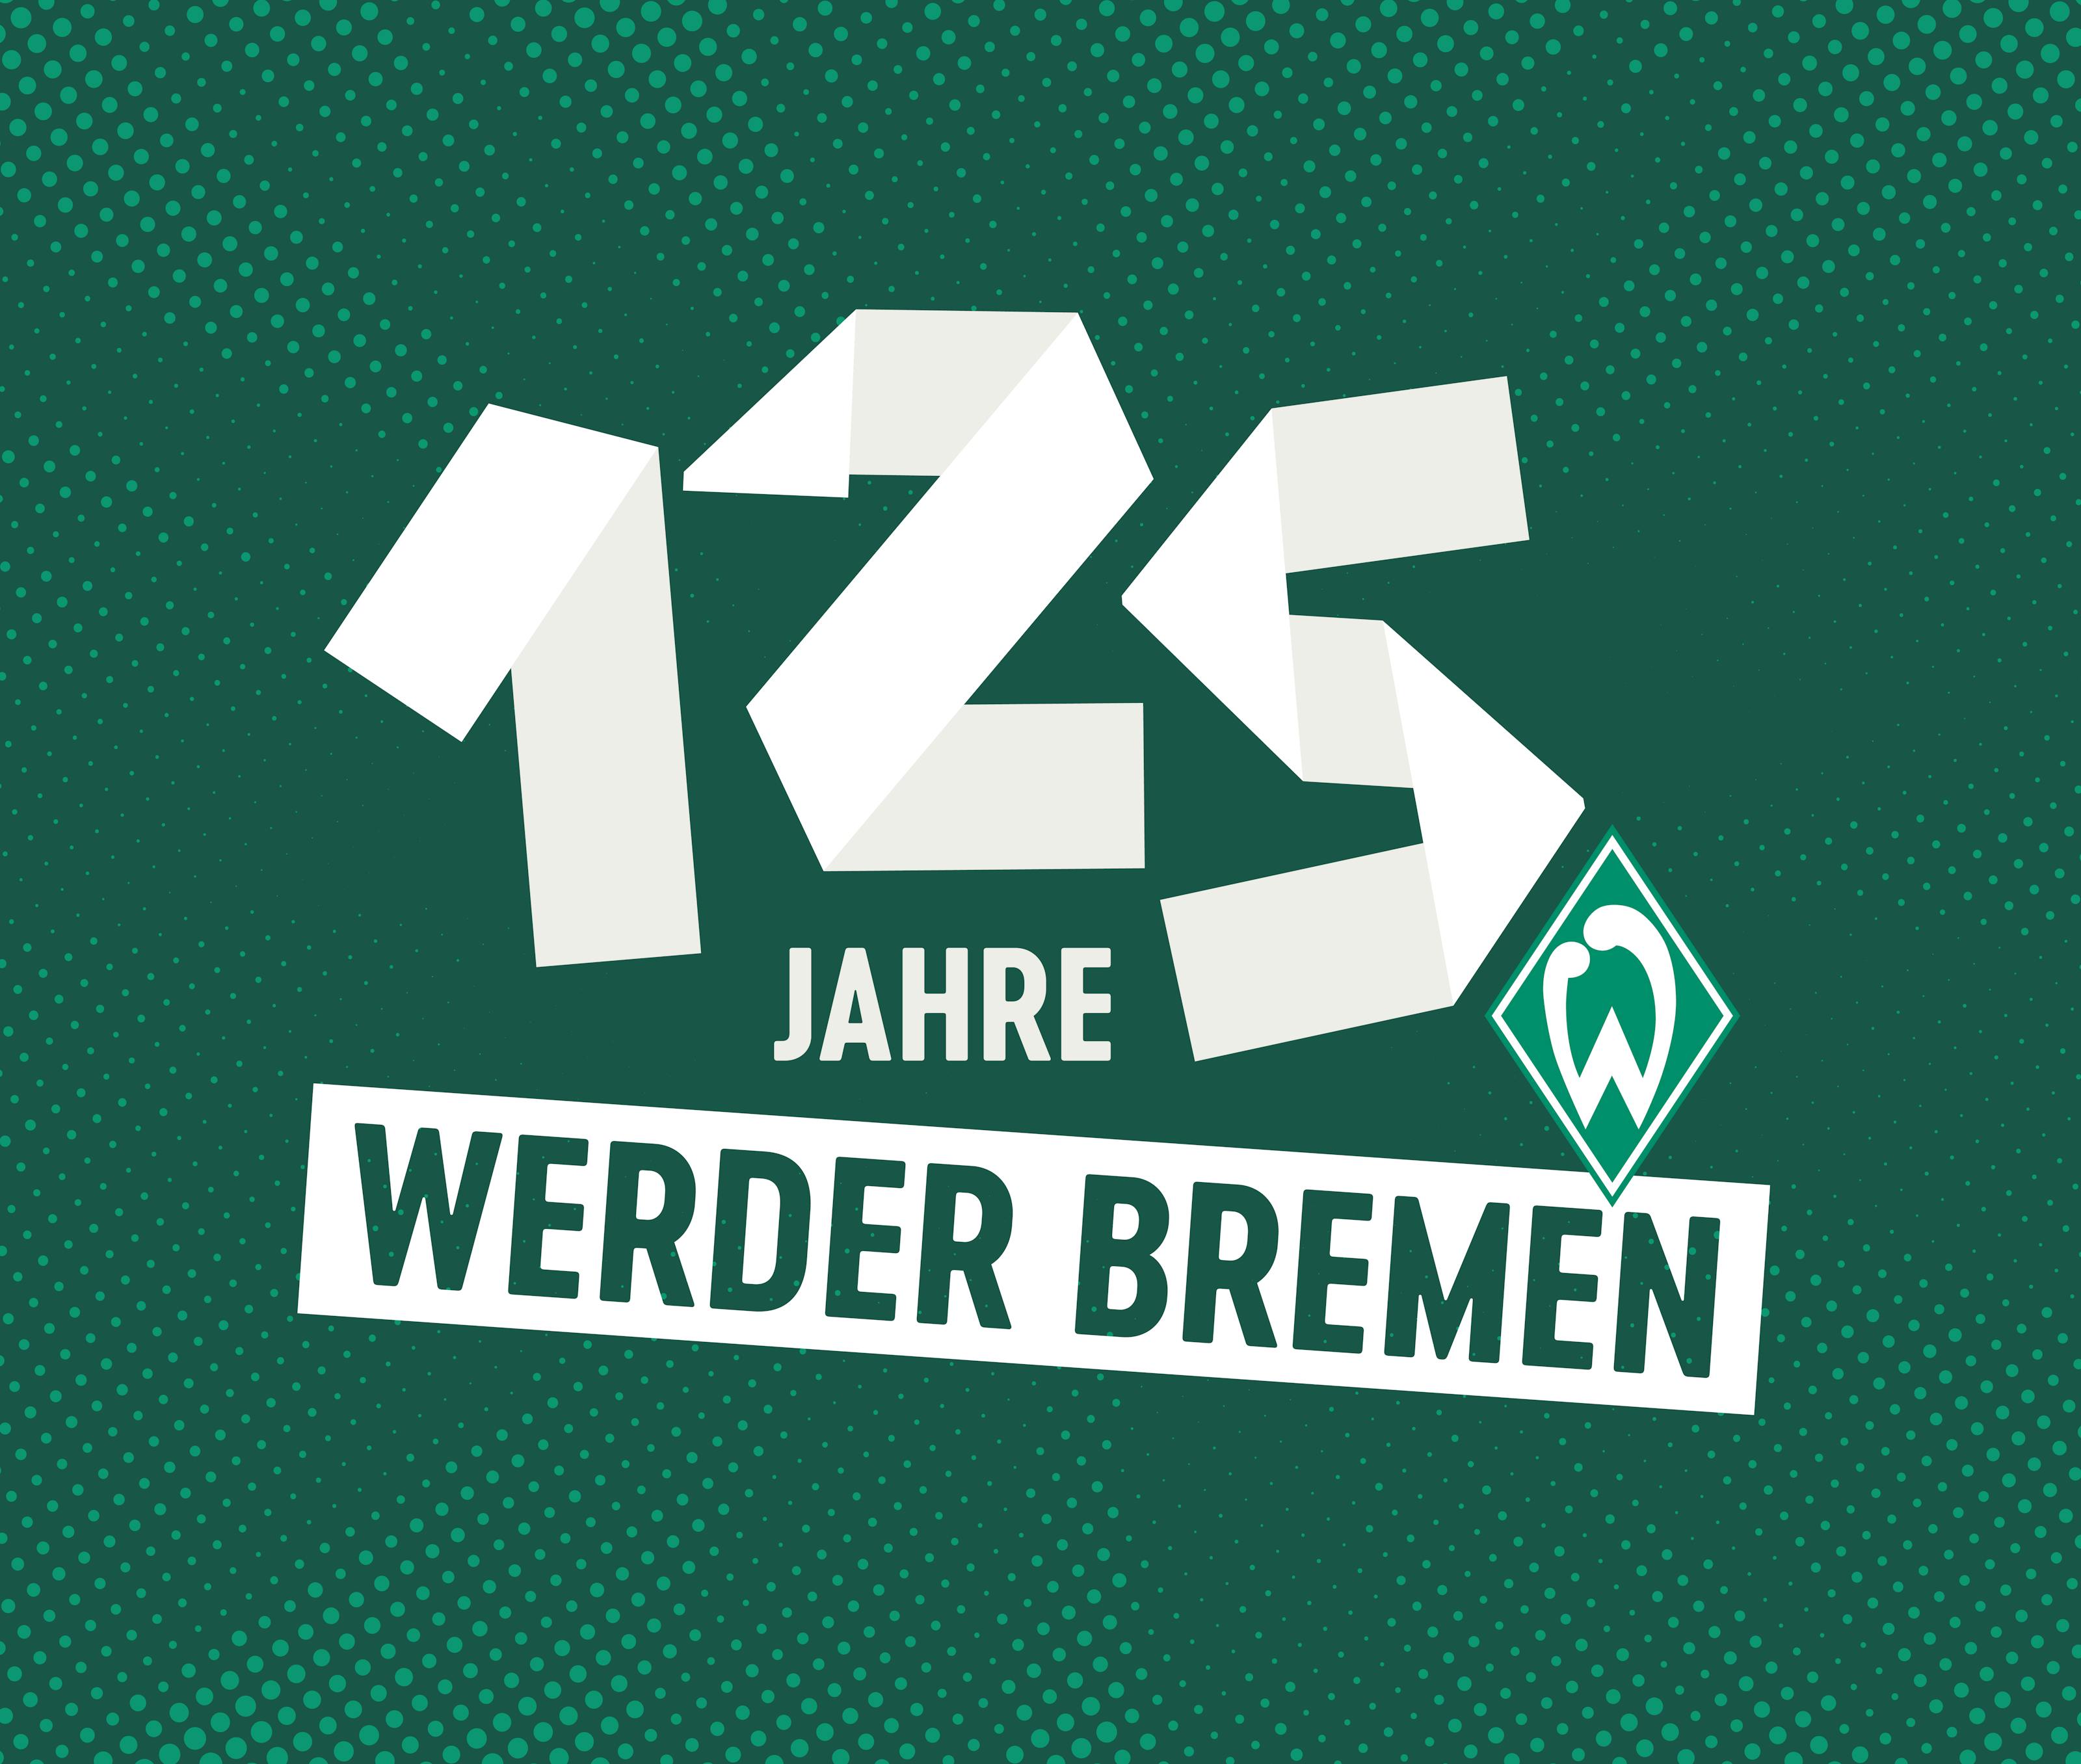 Werder Bremen header image